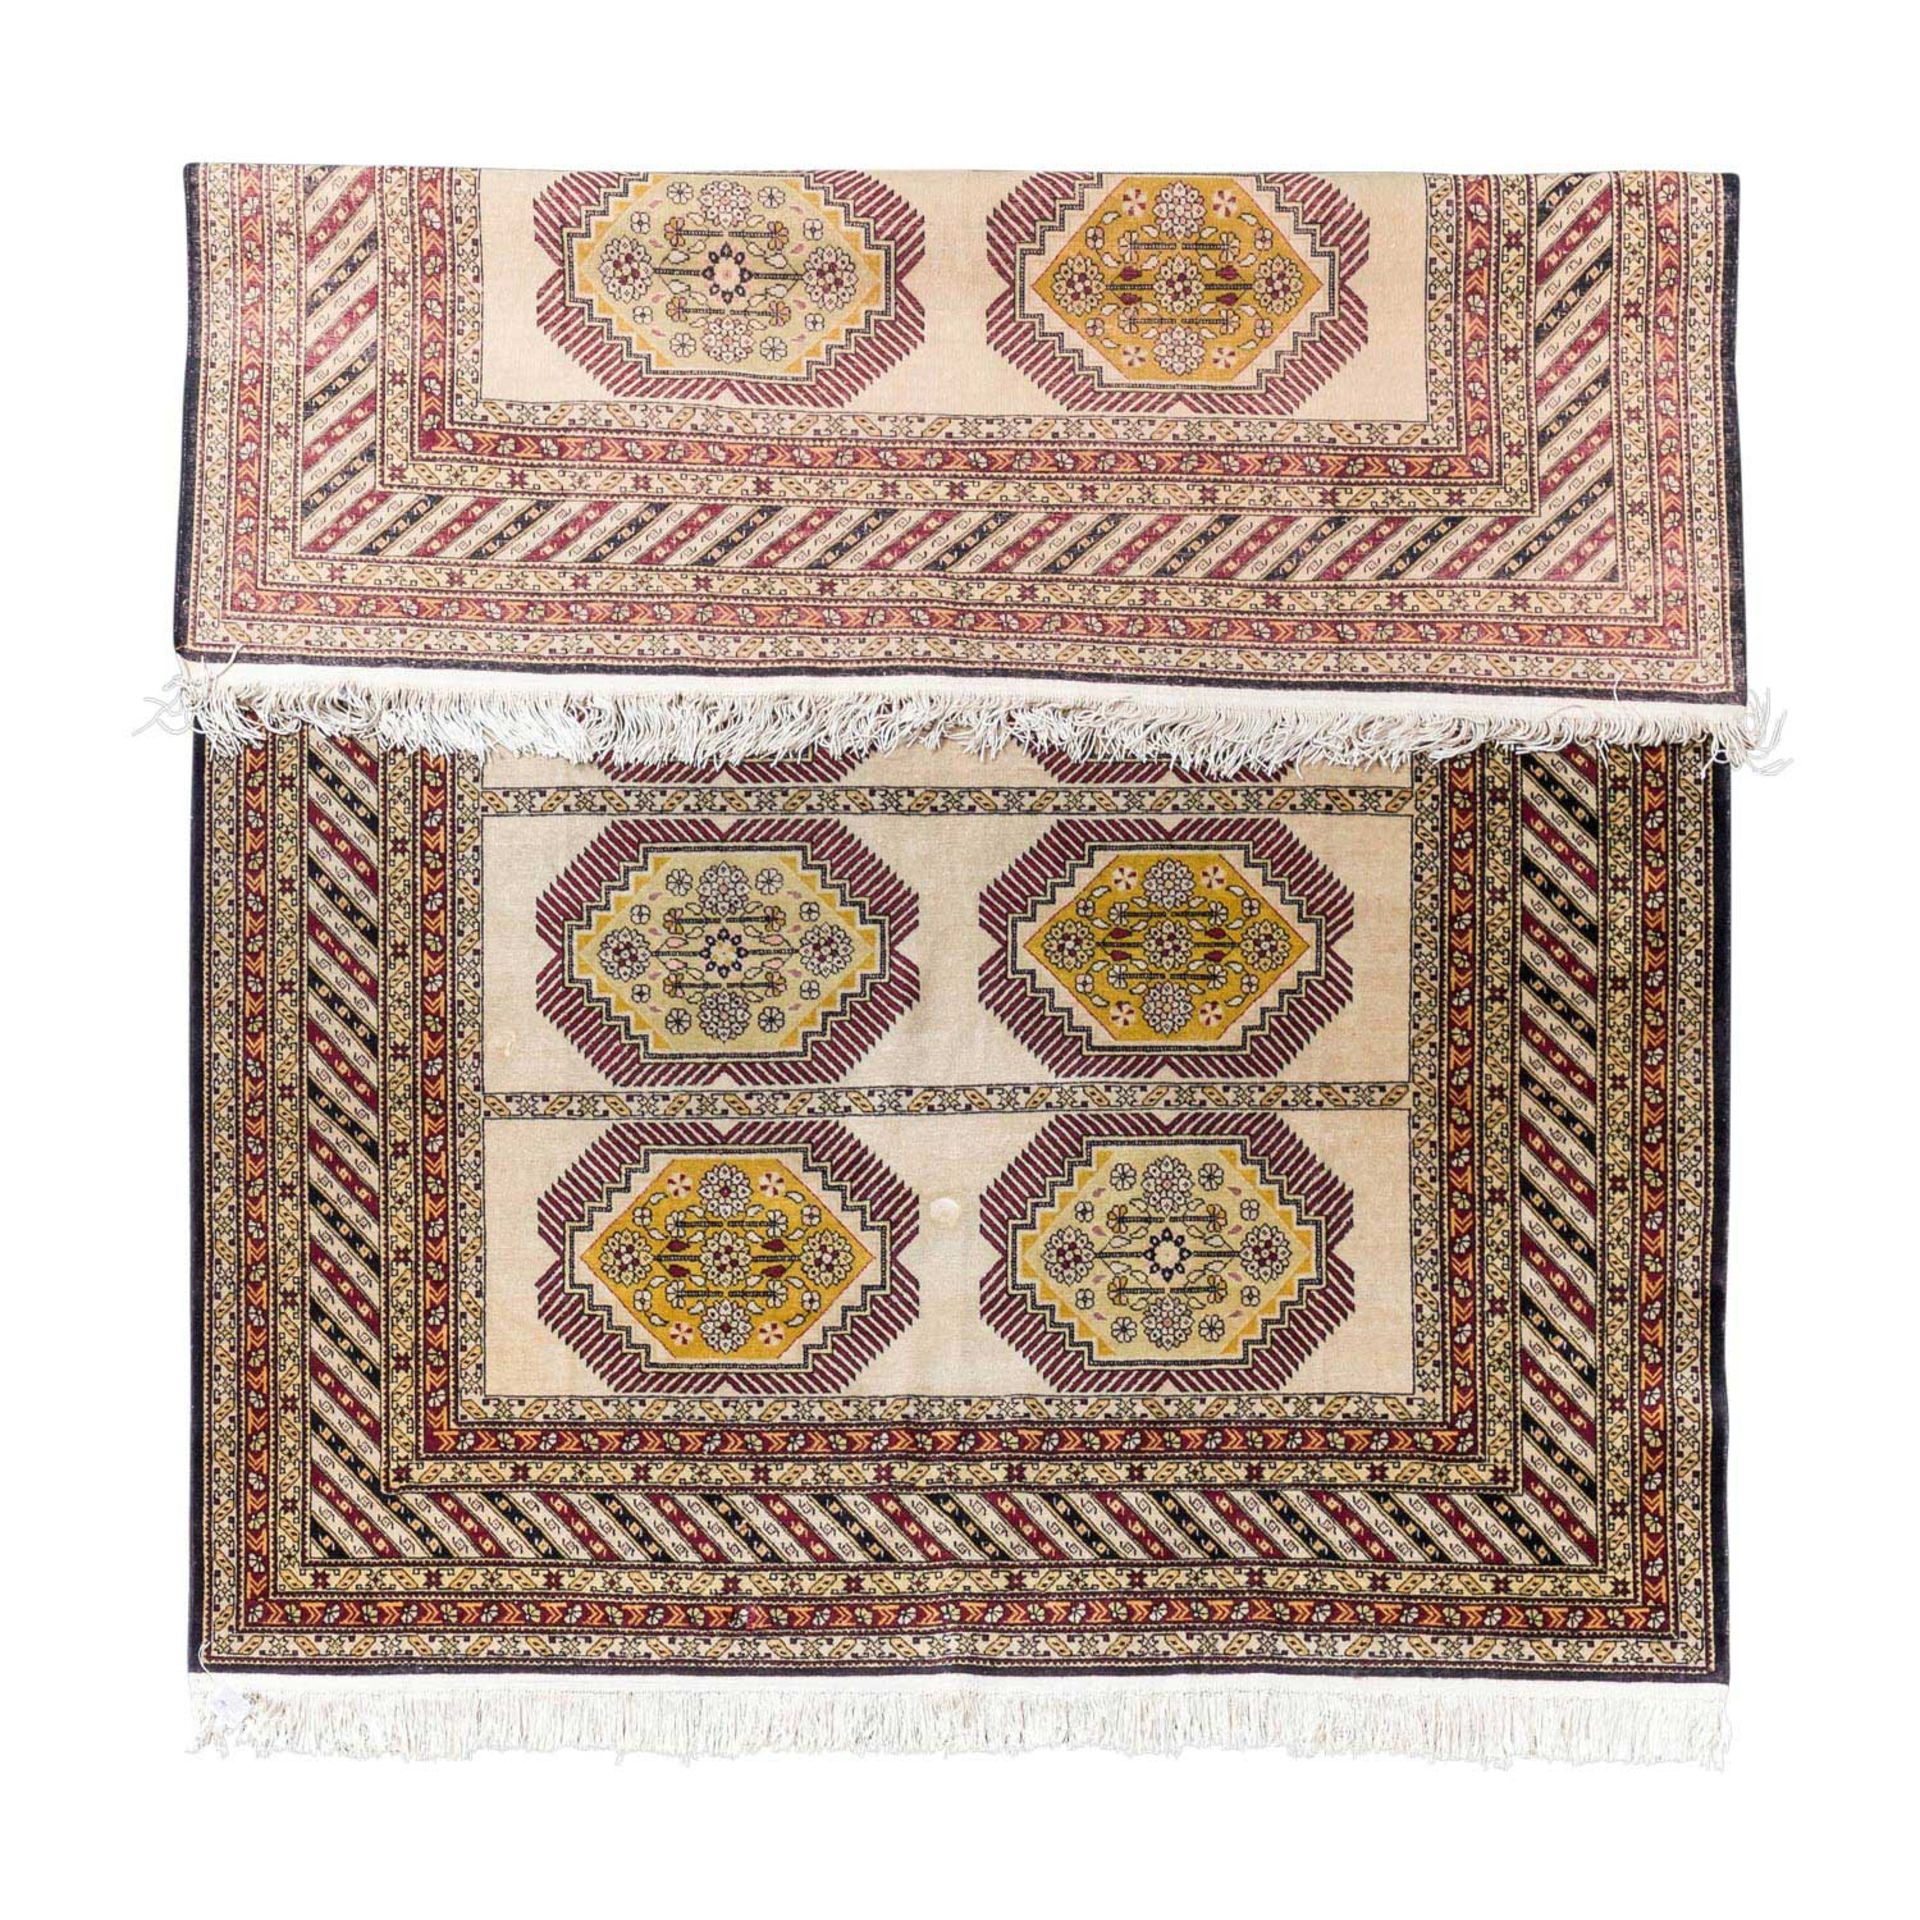 Orientteppich. KUBA SCHIRWAN/KAUKASUS, 1970er Jahre, 266x194 cm. - Image 2 of 4